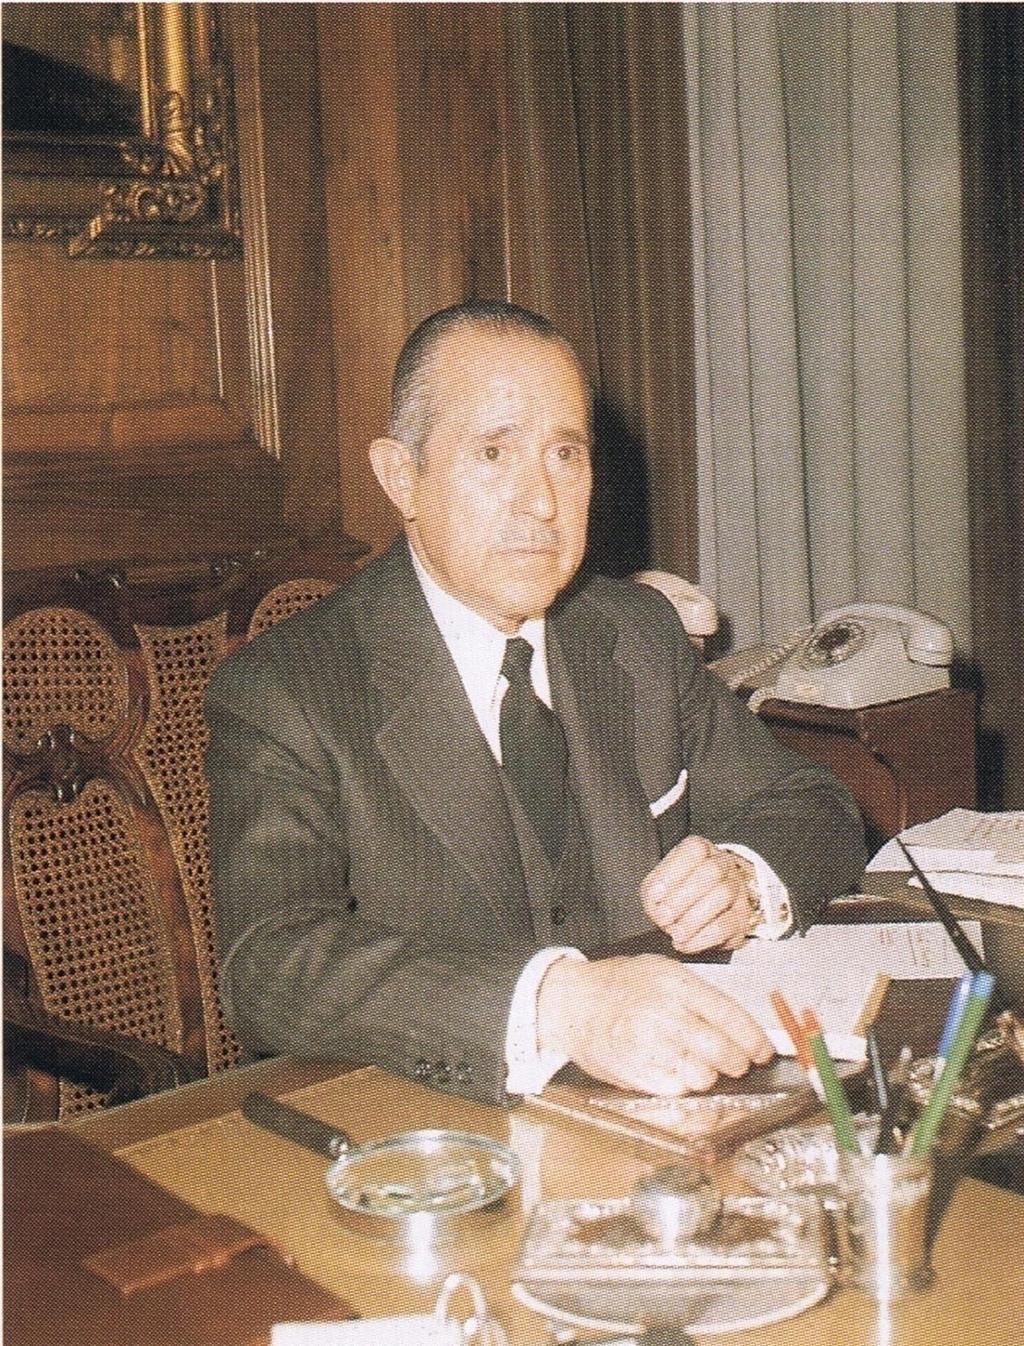 Arias Navarro se hizo cargo del gobierno tras la muerte de Carrero. Aunque prometió algunas reformas no las llevó a cabo.